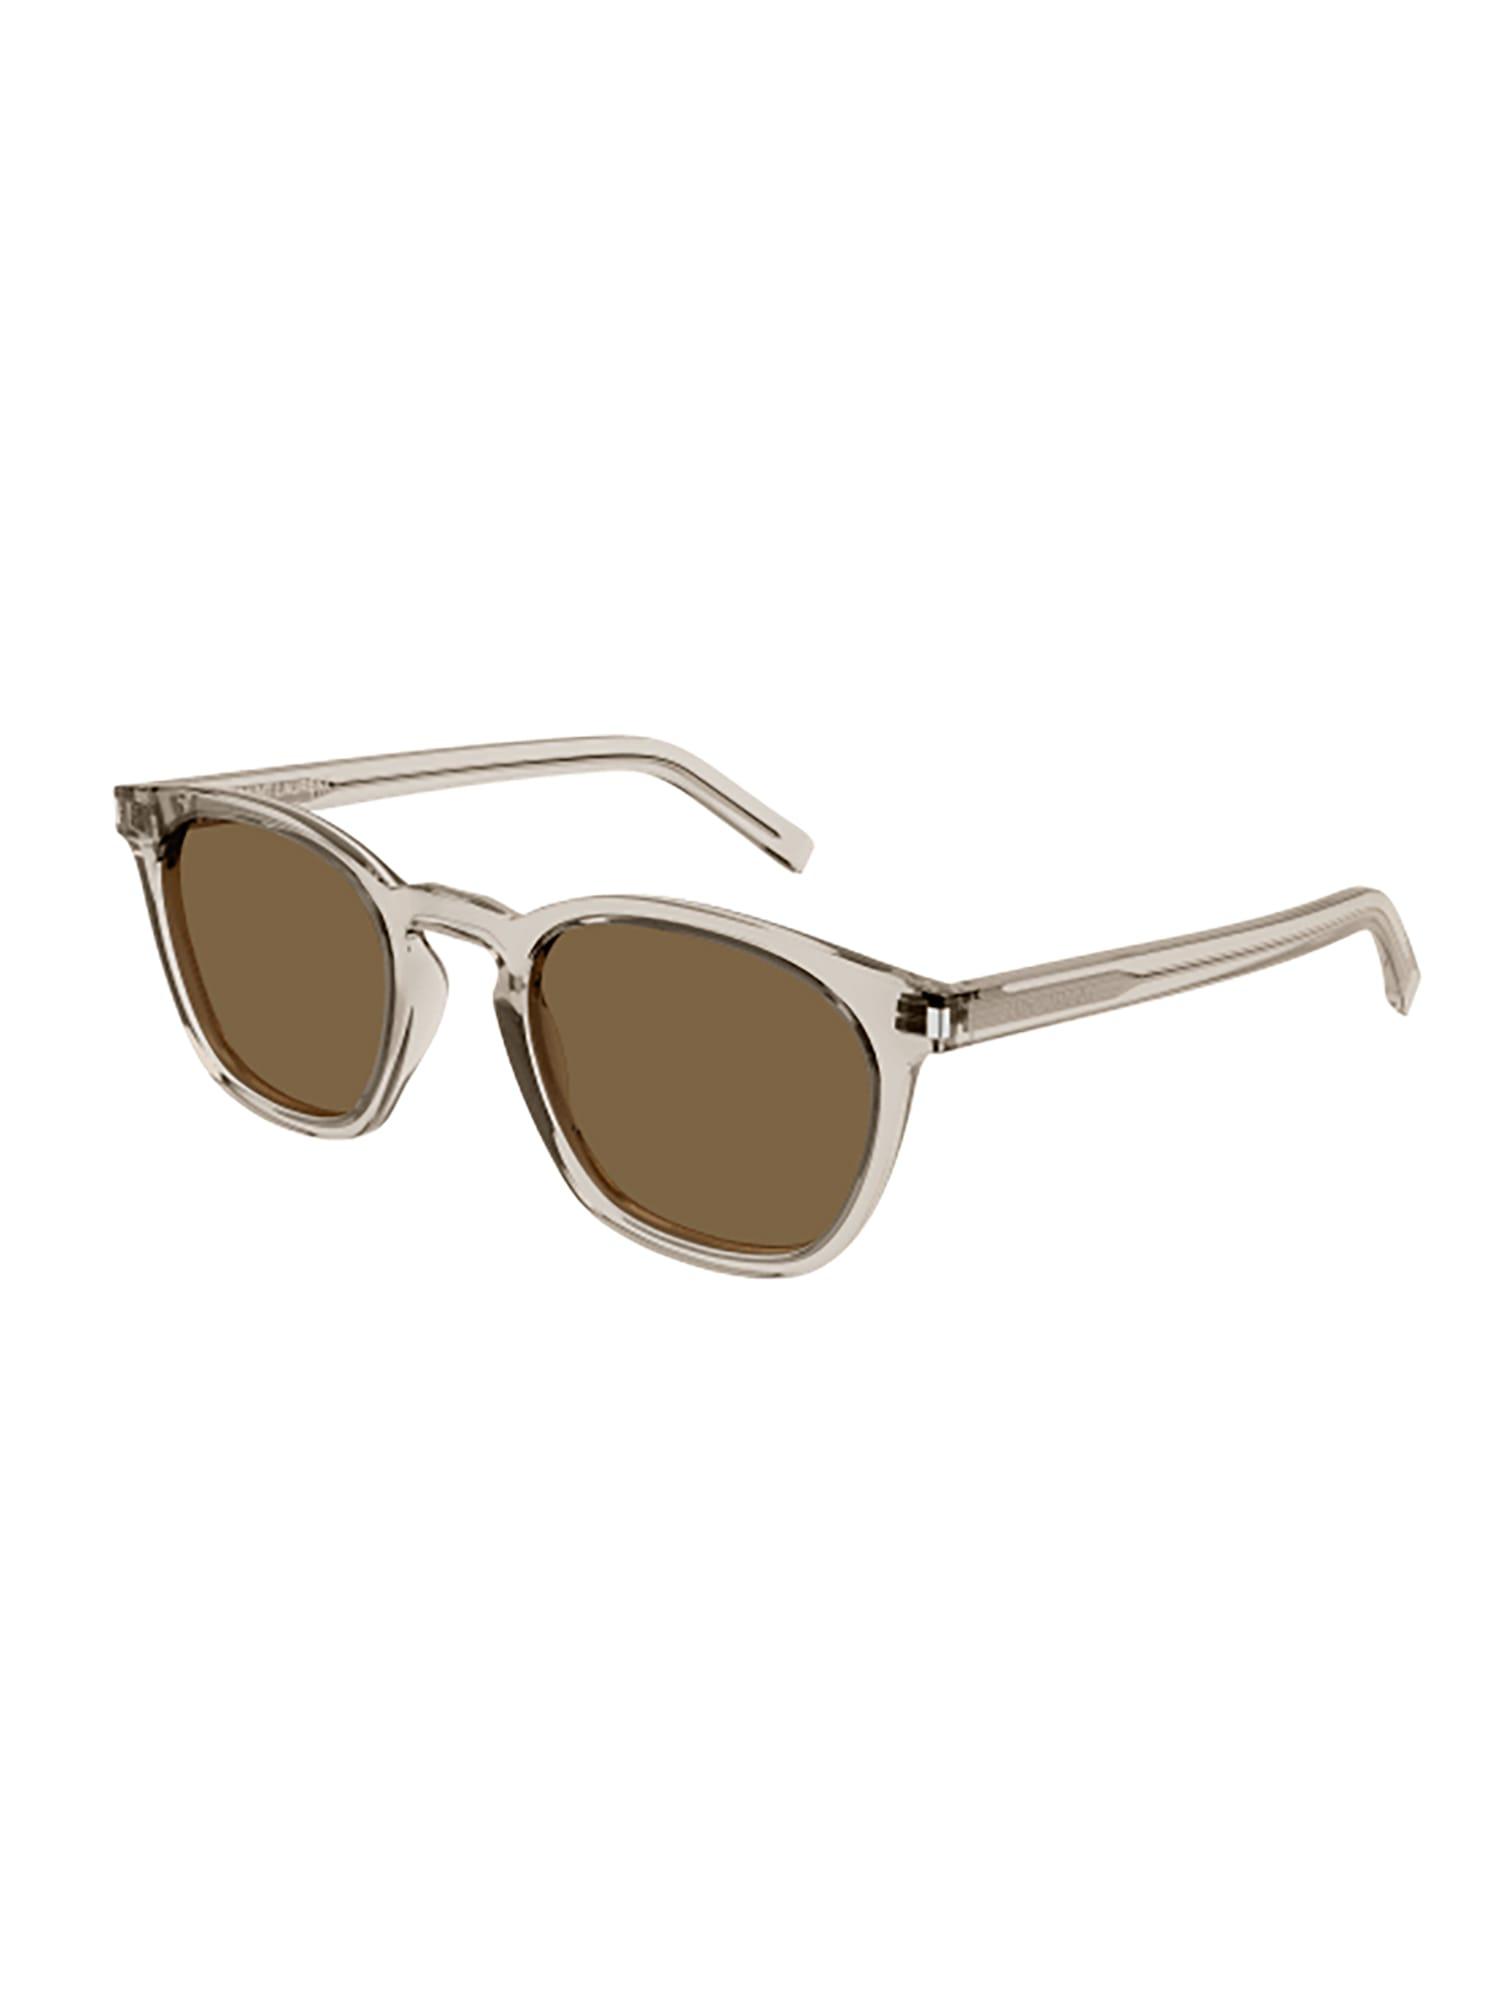 Saint Laurent Green Square Unisex Sunglasses SL 28 042 49